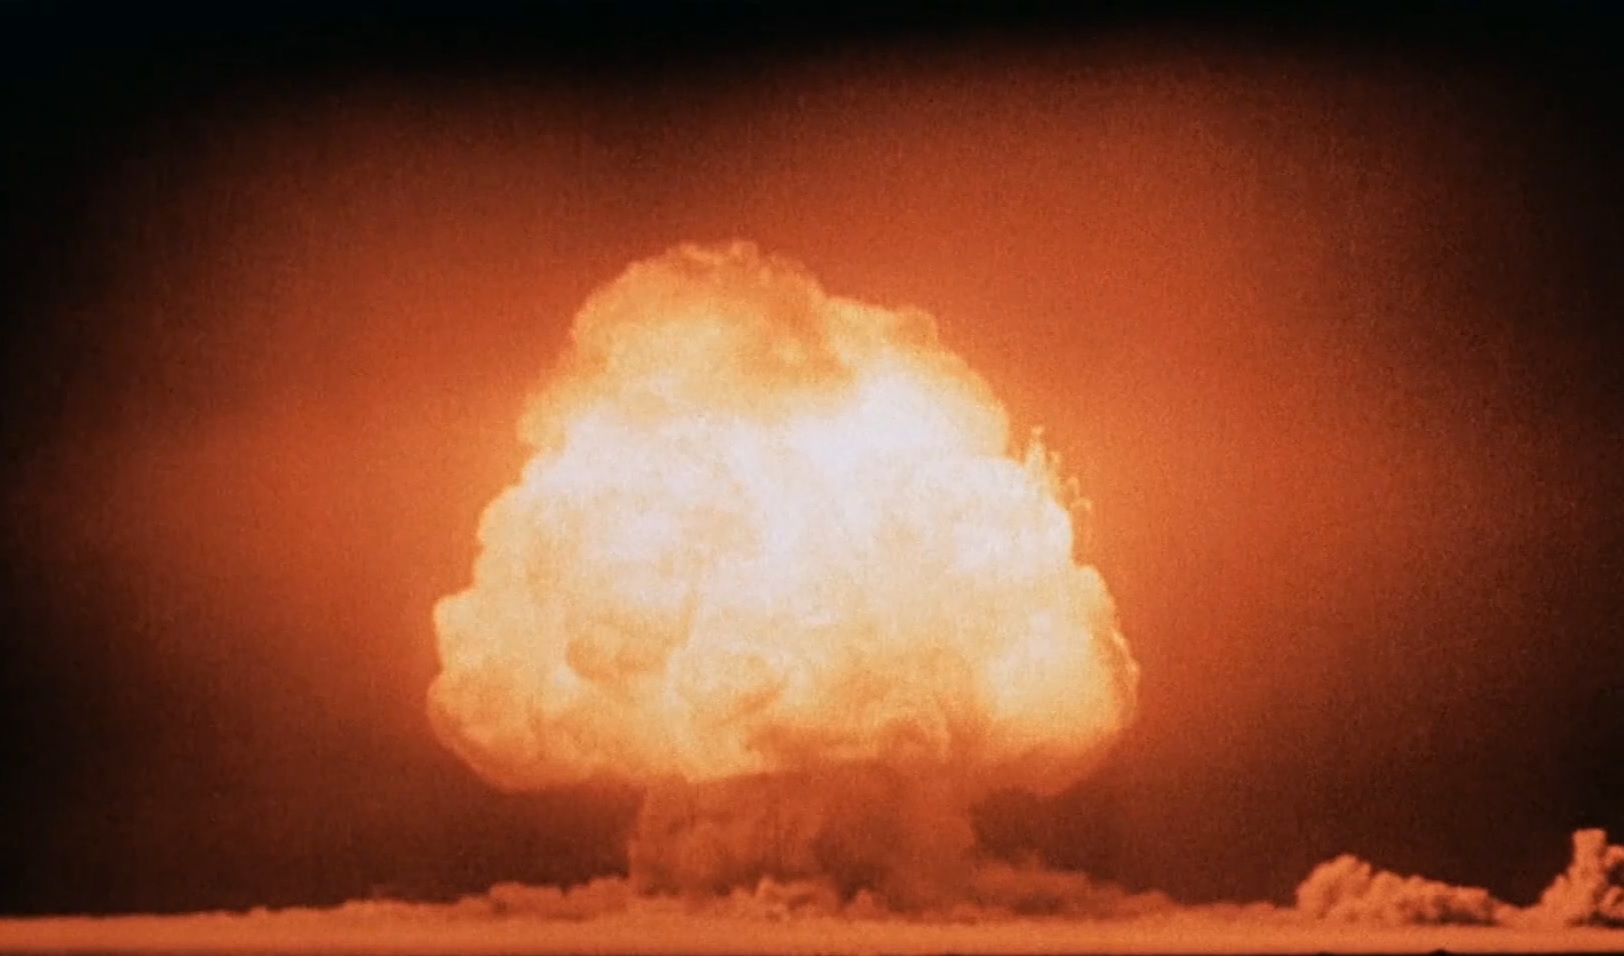 À espera de “Oppenheimer”: 10 curiosidades sobre o projeto Manhattan